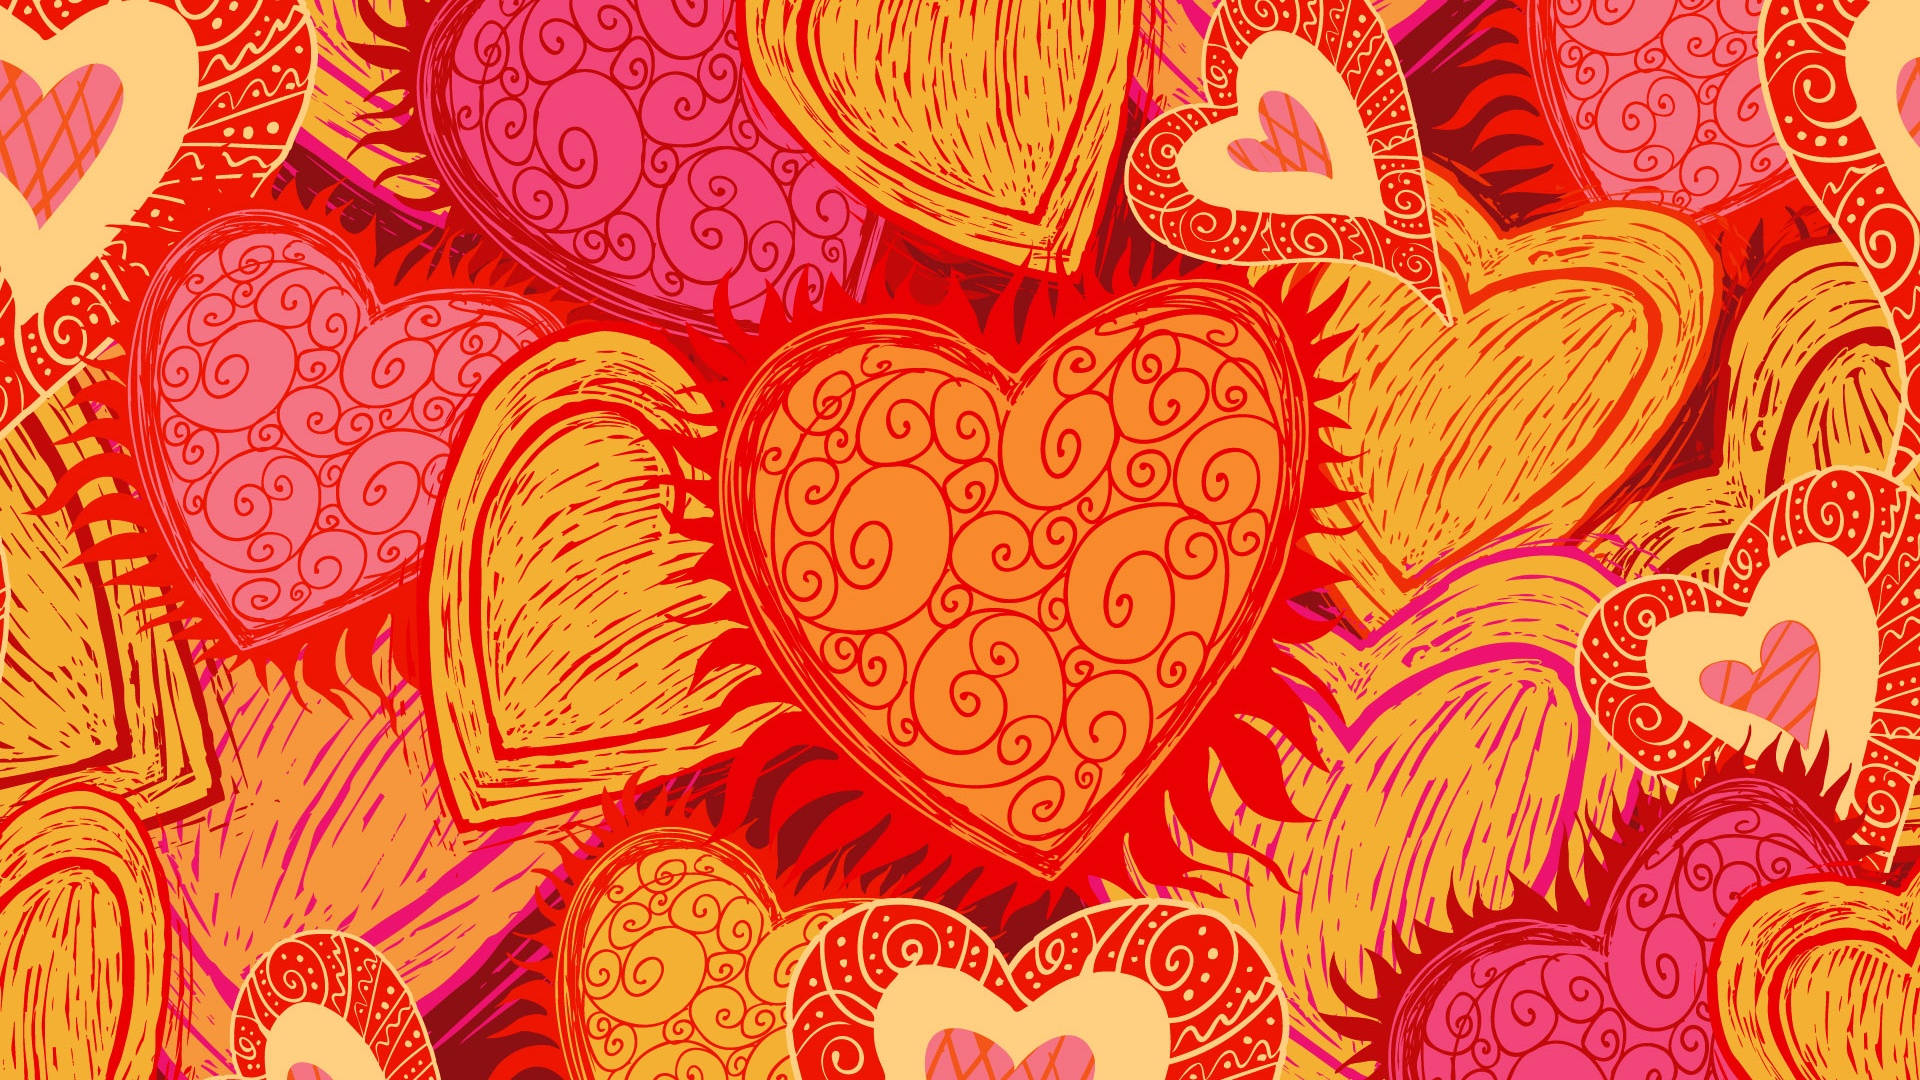 Celebrael Día De San Valentín Con Amor Y Creatividad Fondo de pantalla